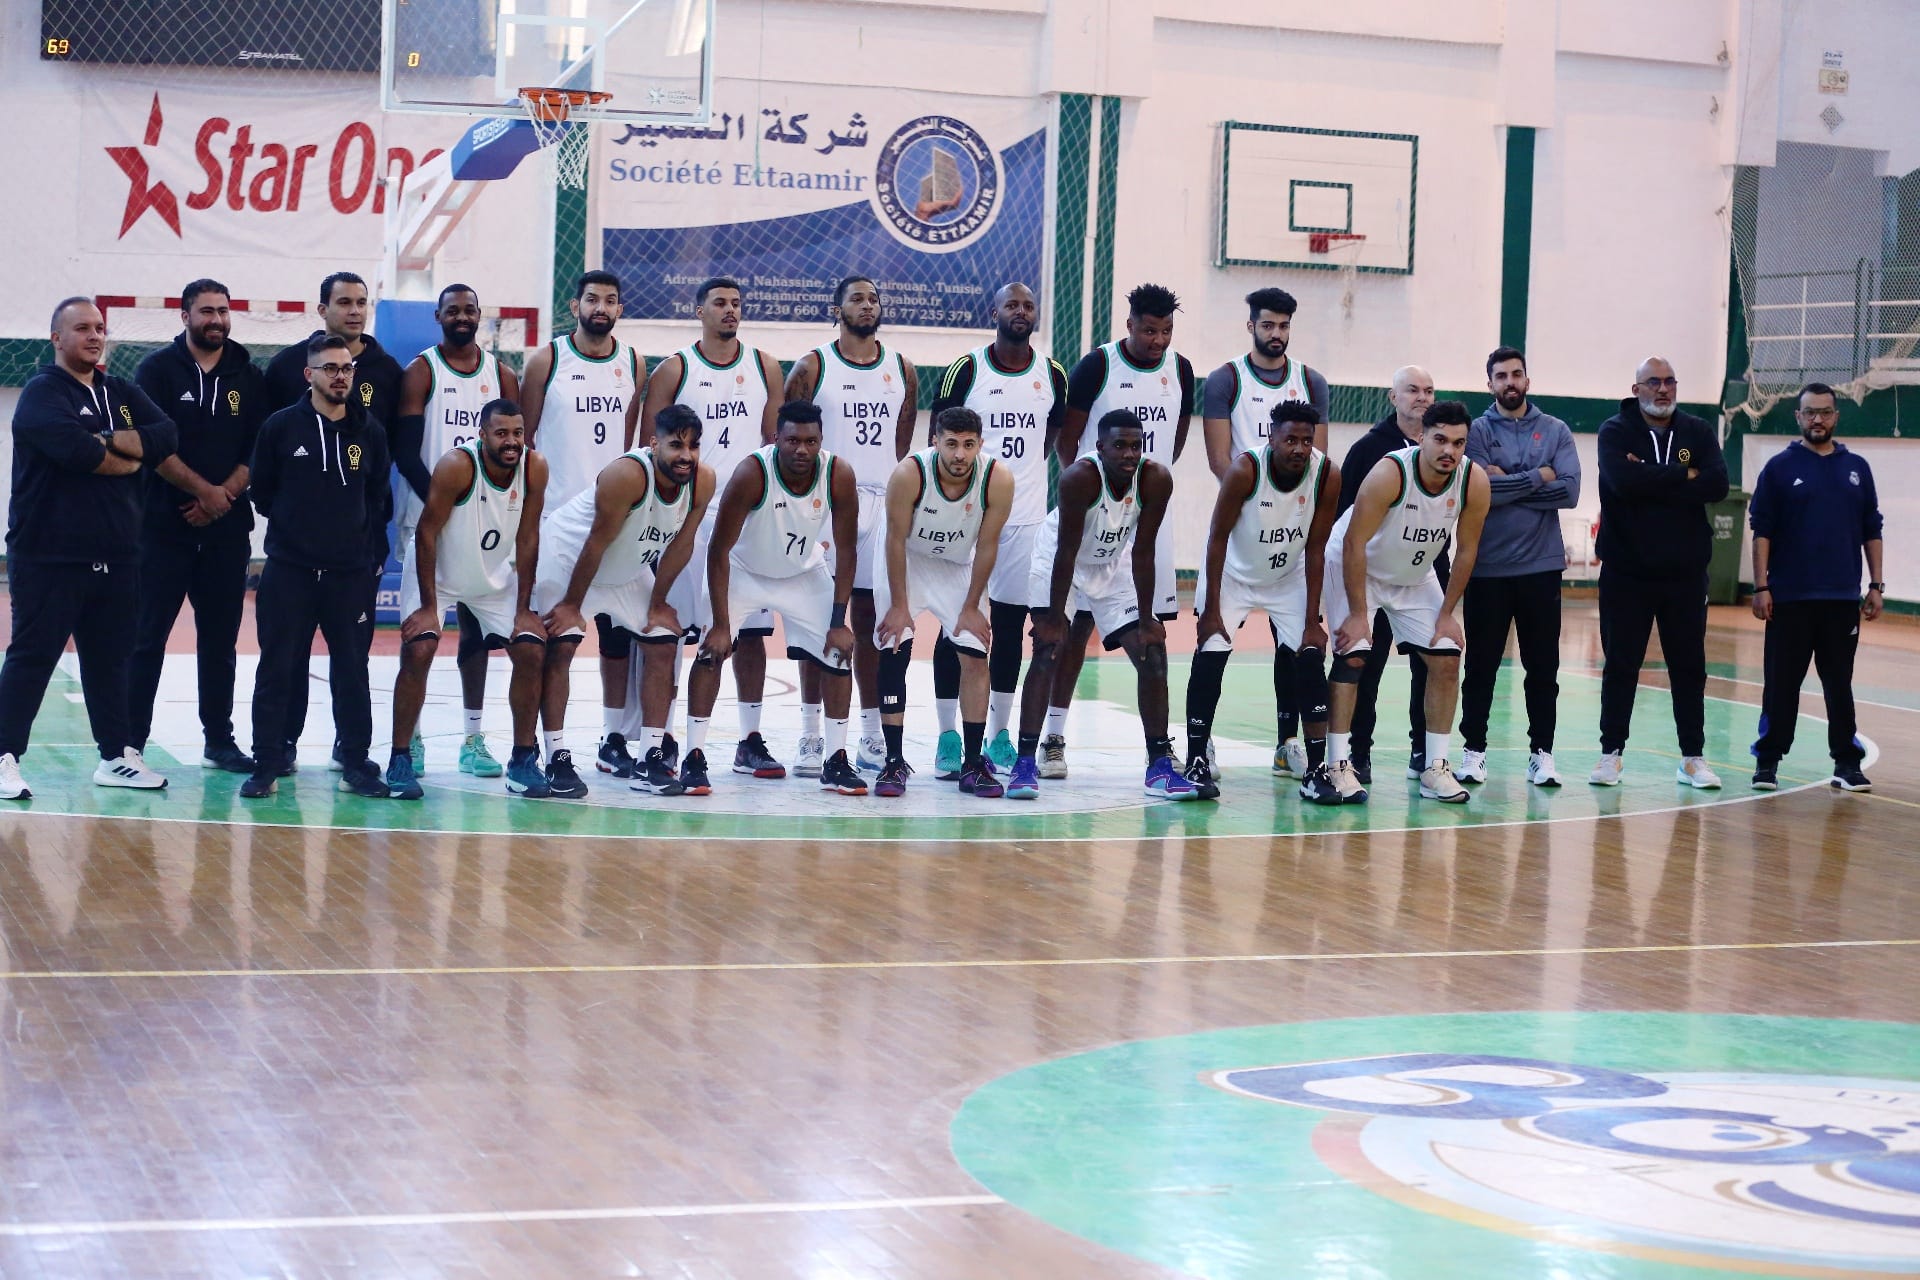  المنتخب الوطني " لكرة السلة  يفوز على فريق "شبيبة القيروان" التونسي " في لقاء ودي استعداداً لتصفيات المؤهلة إلى كأس أمم أفريقيا .